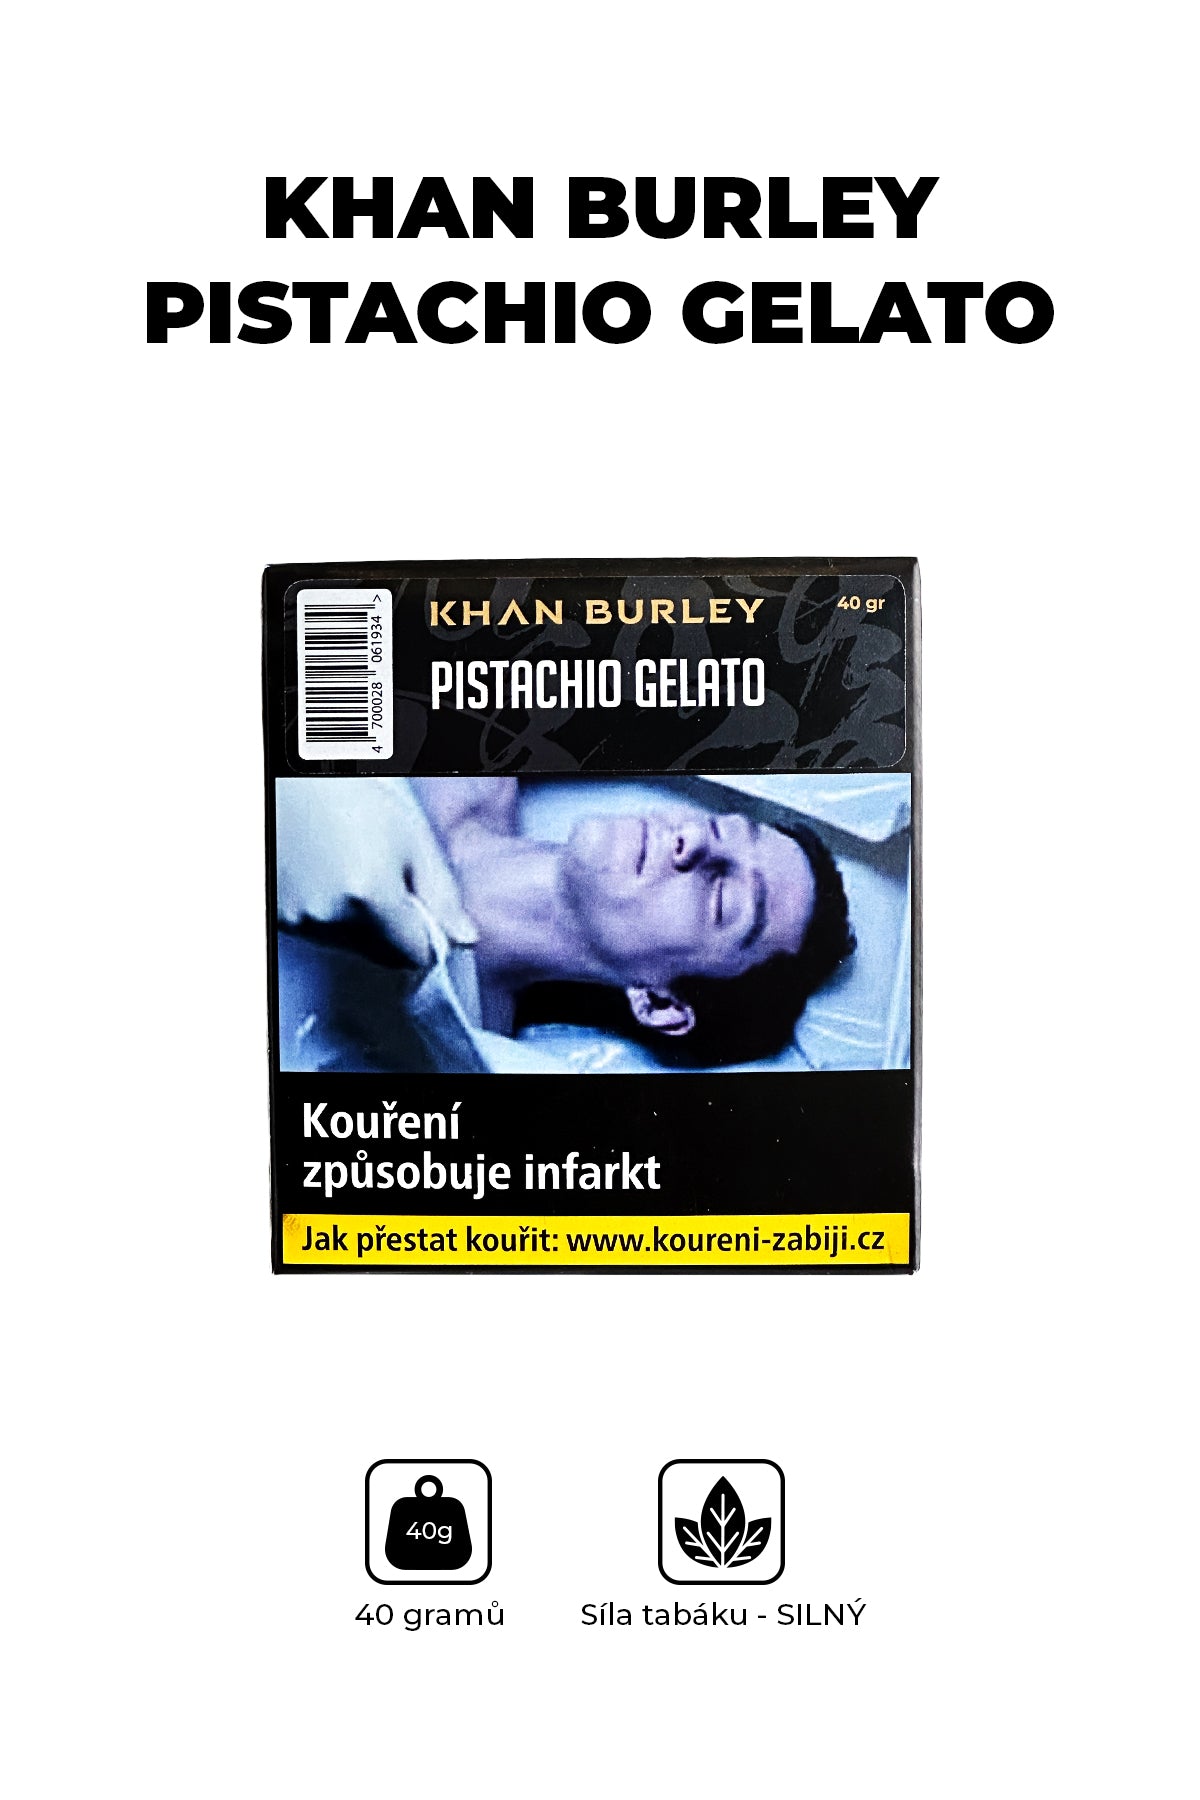 Tabák - Khan Burley 40g - Pistachio Gelato